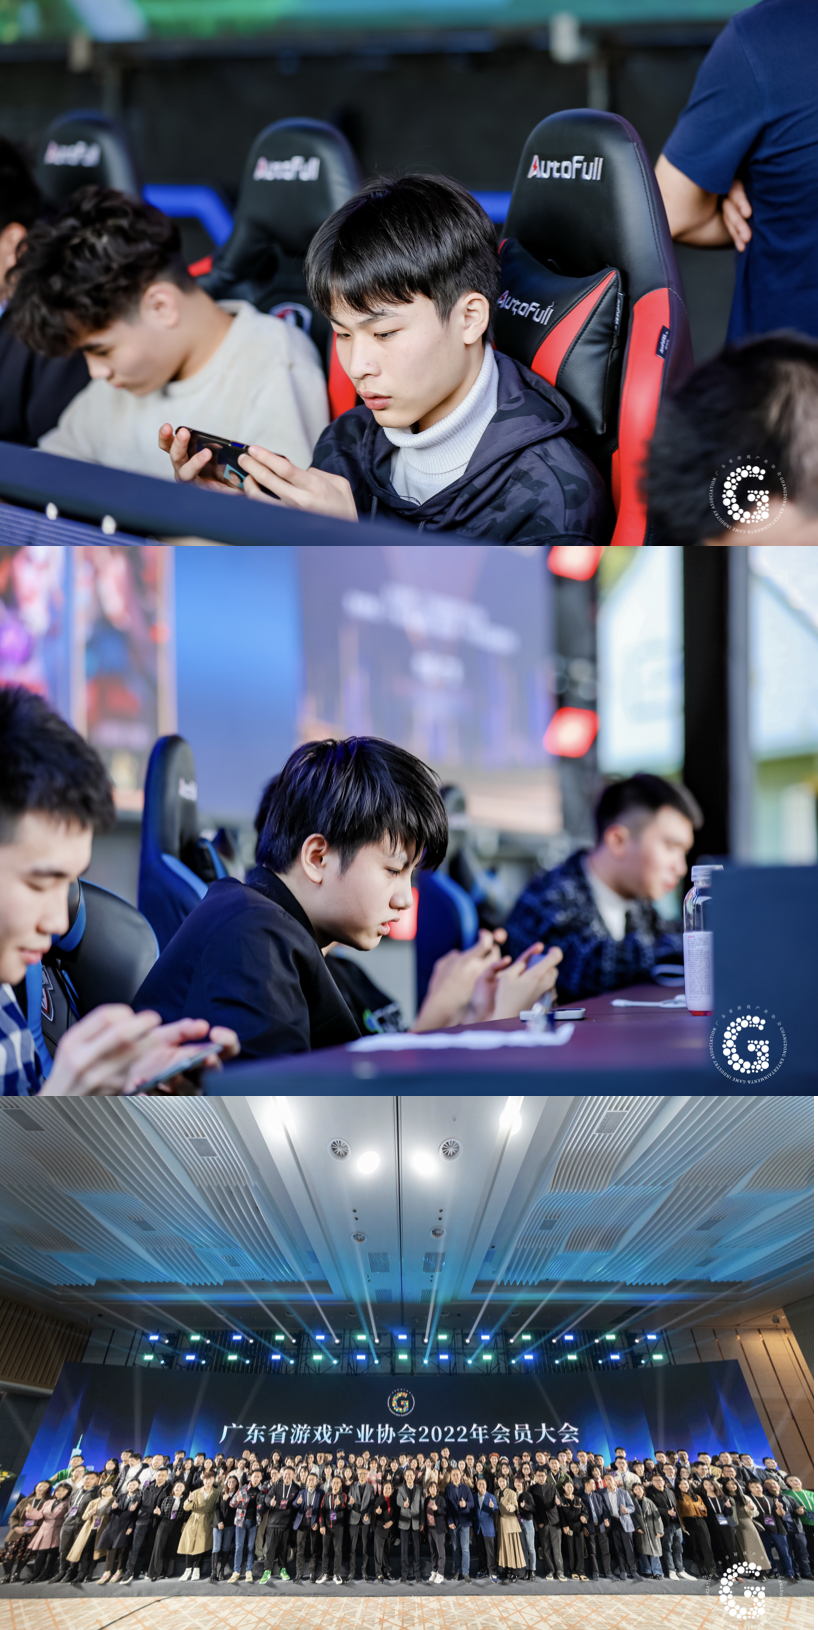 2022广东游戏产业年会于广州黄埔隆重召开  系列活动亮点纷呈